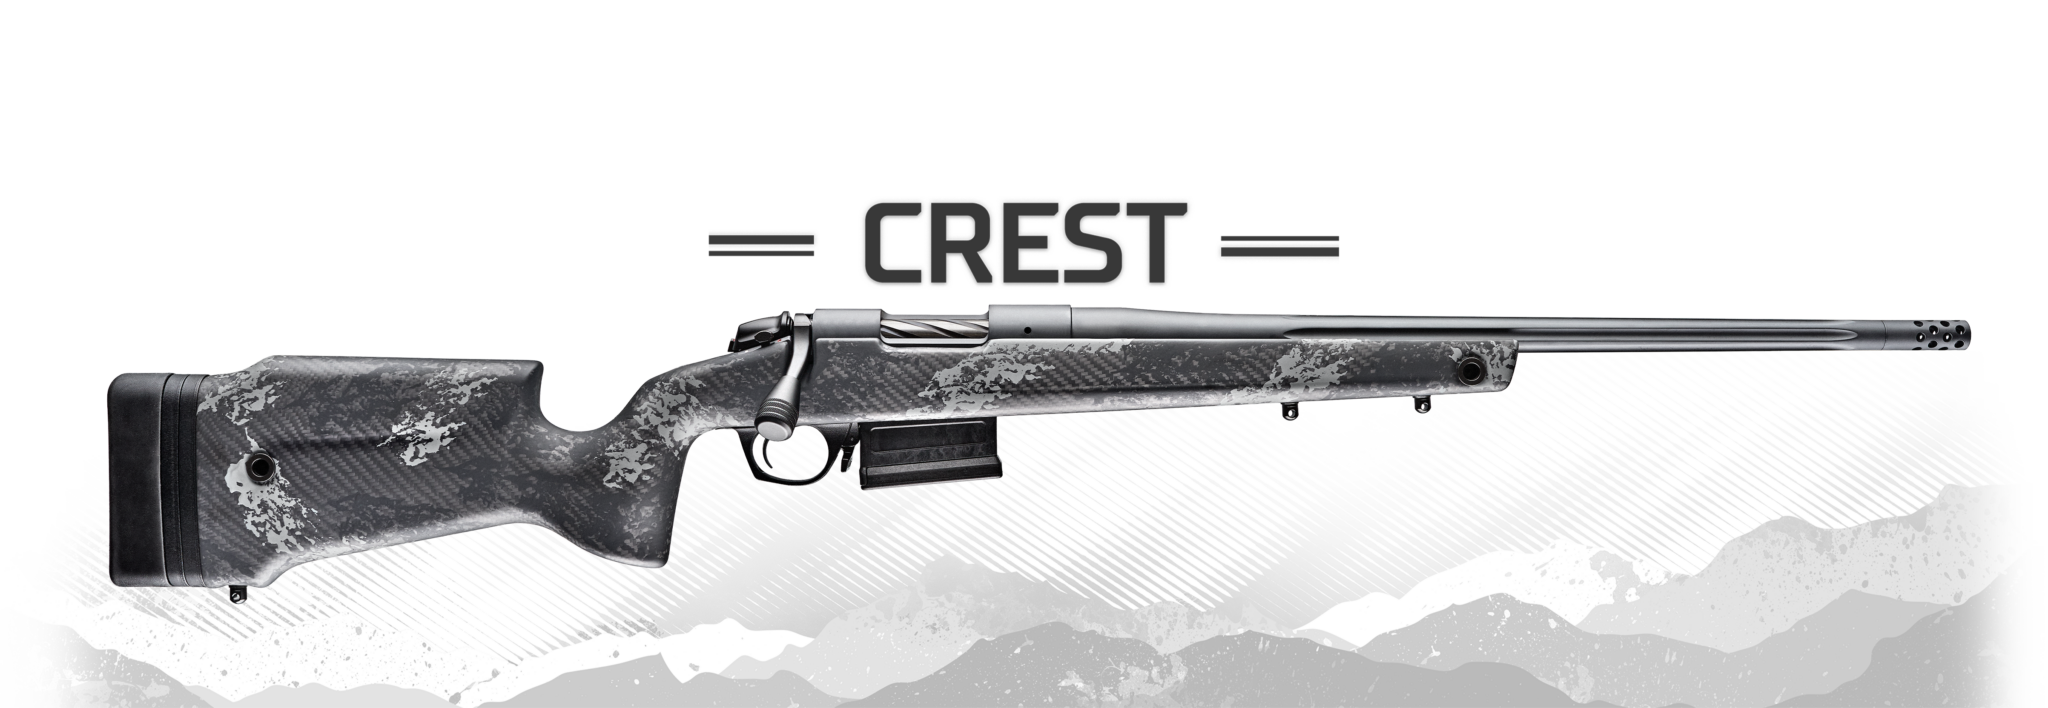 Meet the New Ultra-Lightweight Bergara B-14 Squared Crest Rifle